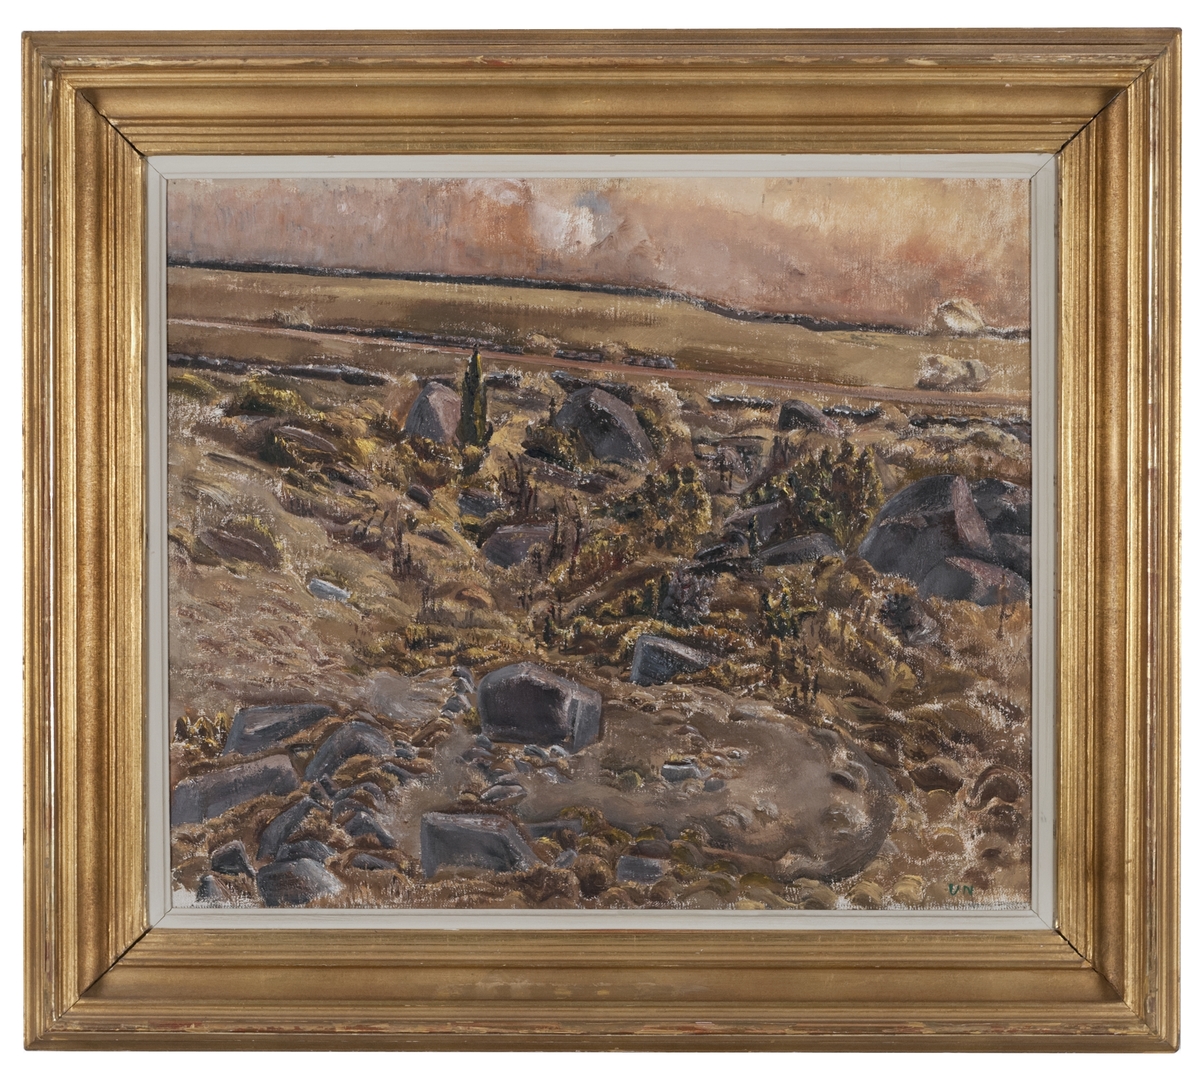 Landskapsbild från kanten av landborgen med väg och stengärdesgård i fonden samt i förgrunden Alvarets steniga sluttning neråt. Övervägande gula och gr färger. Målningen kallas i katalogen "Terräng, Öland".